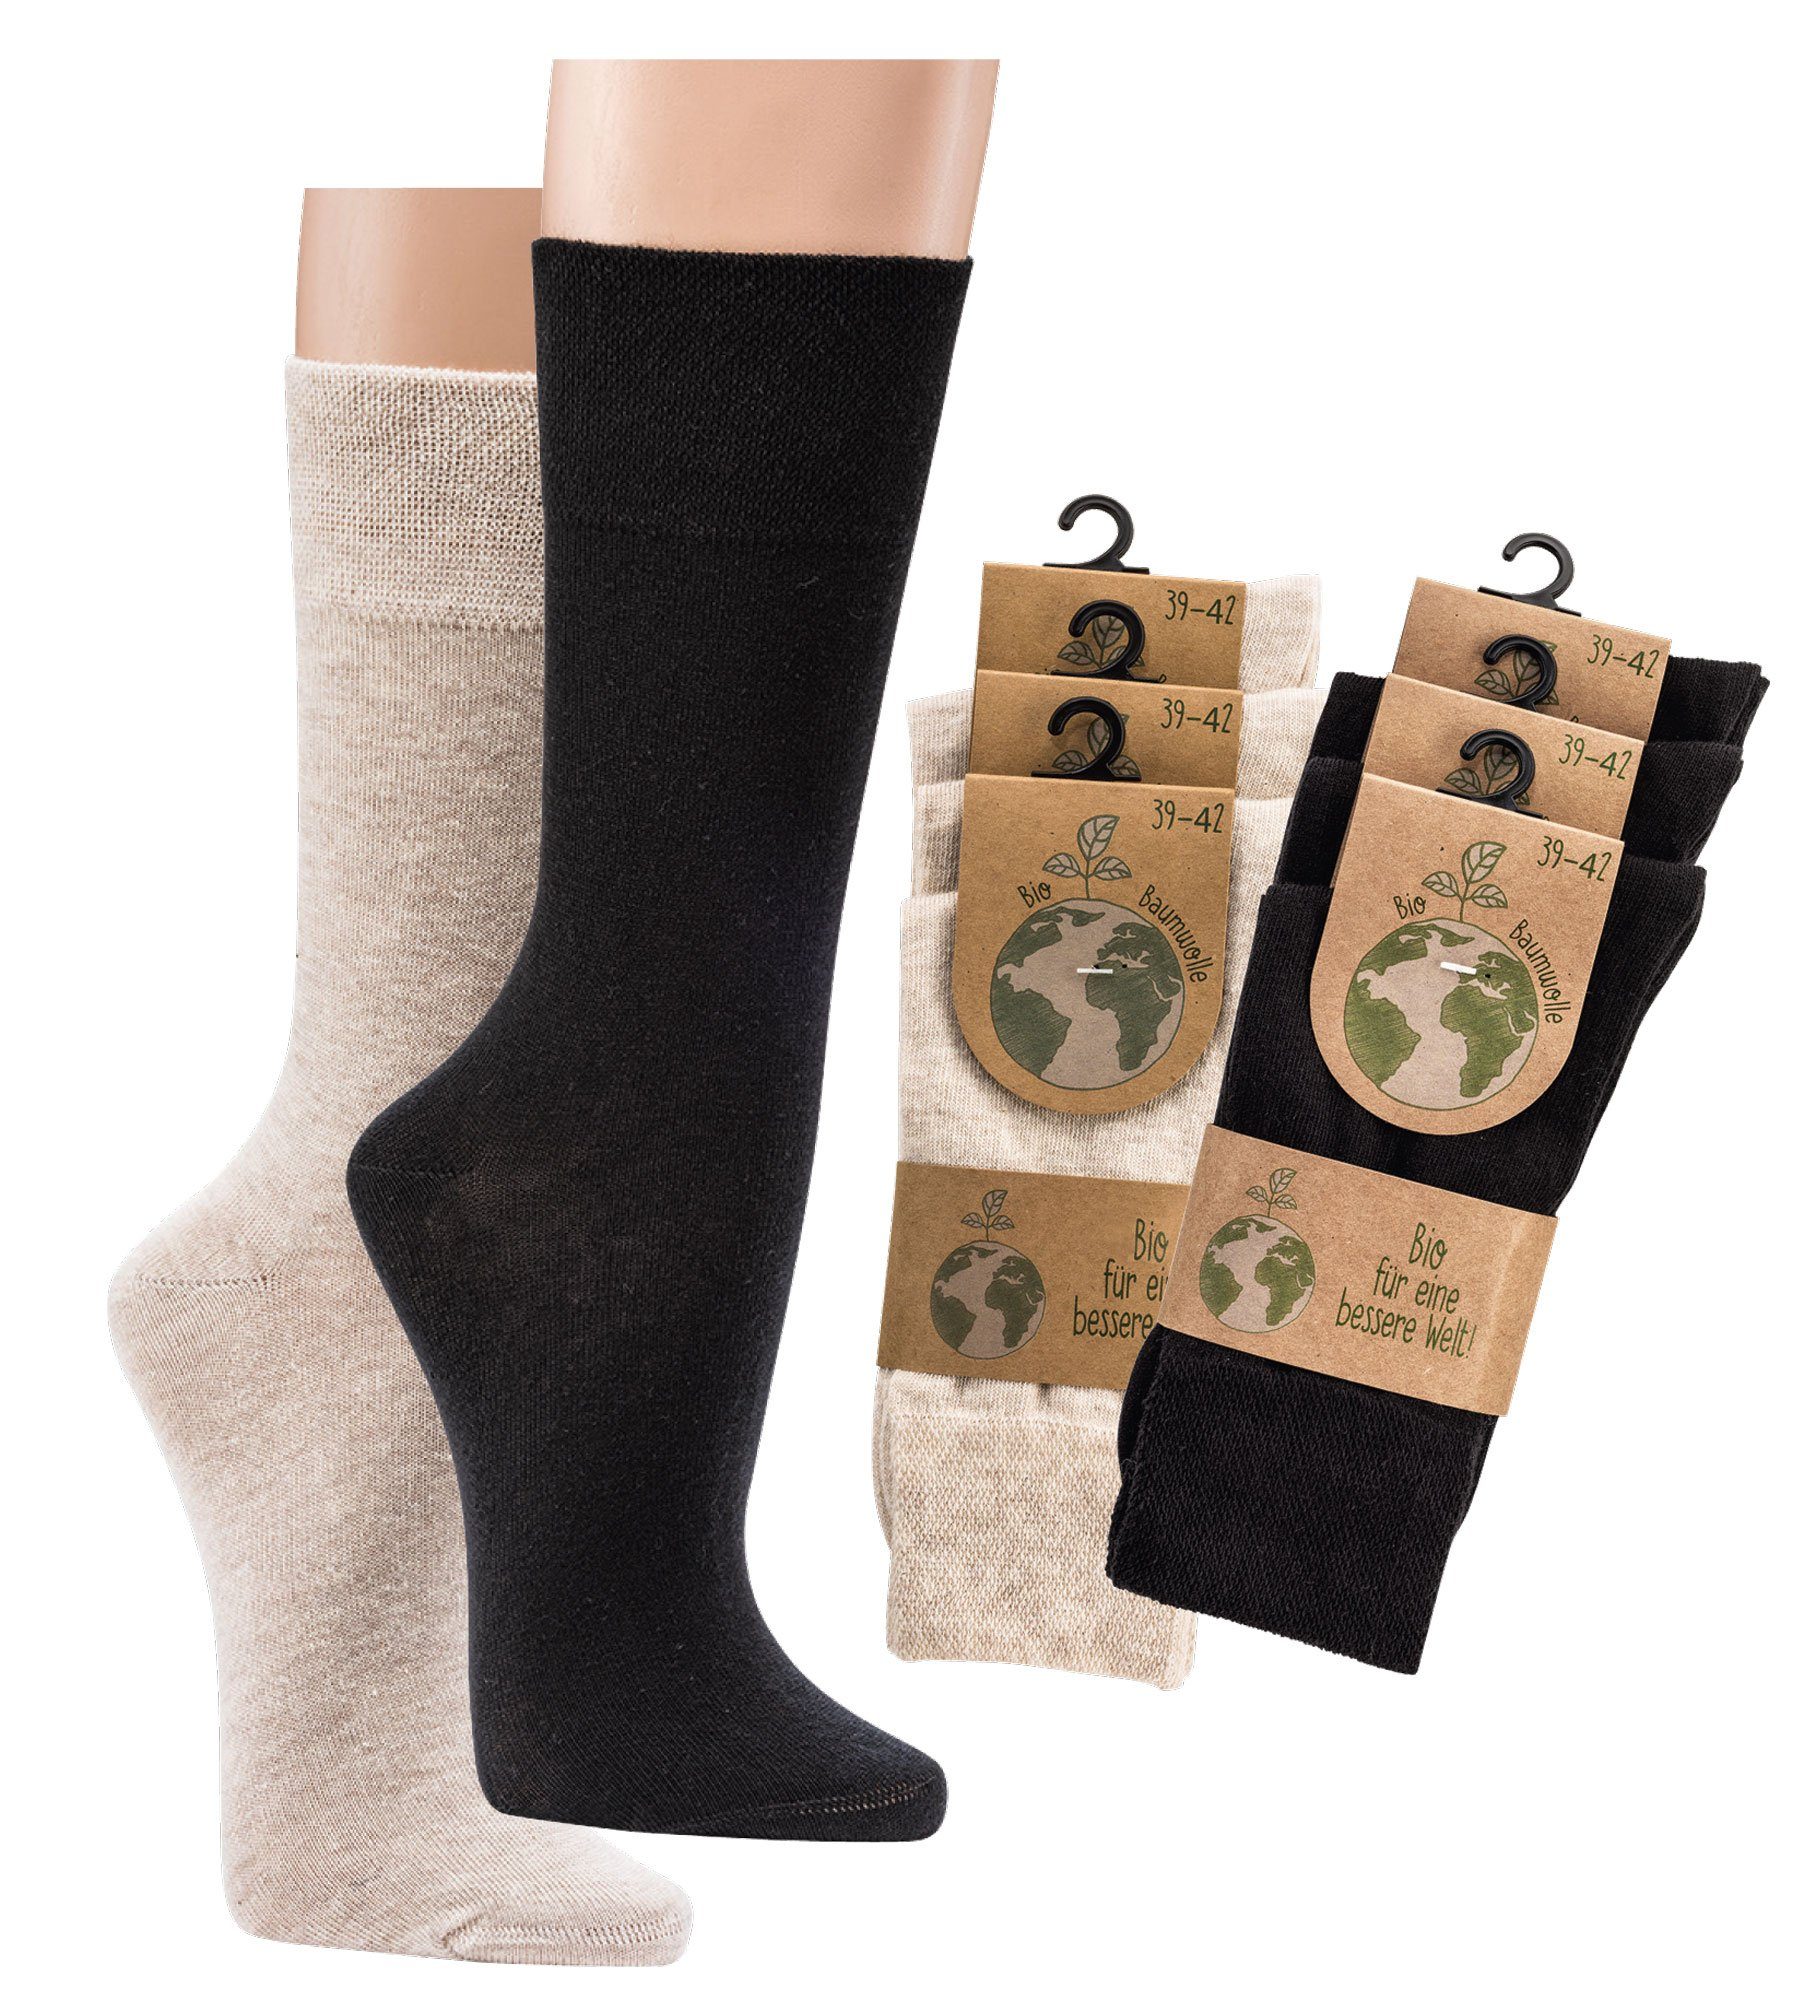 TippTexx 24 Socken 6 Paar Wellness-Socken aus Anti-Loch-Garantie Natur Bio-Baumwolle mit